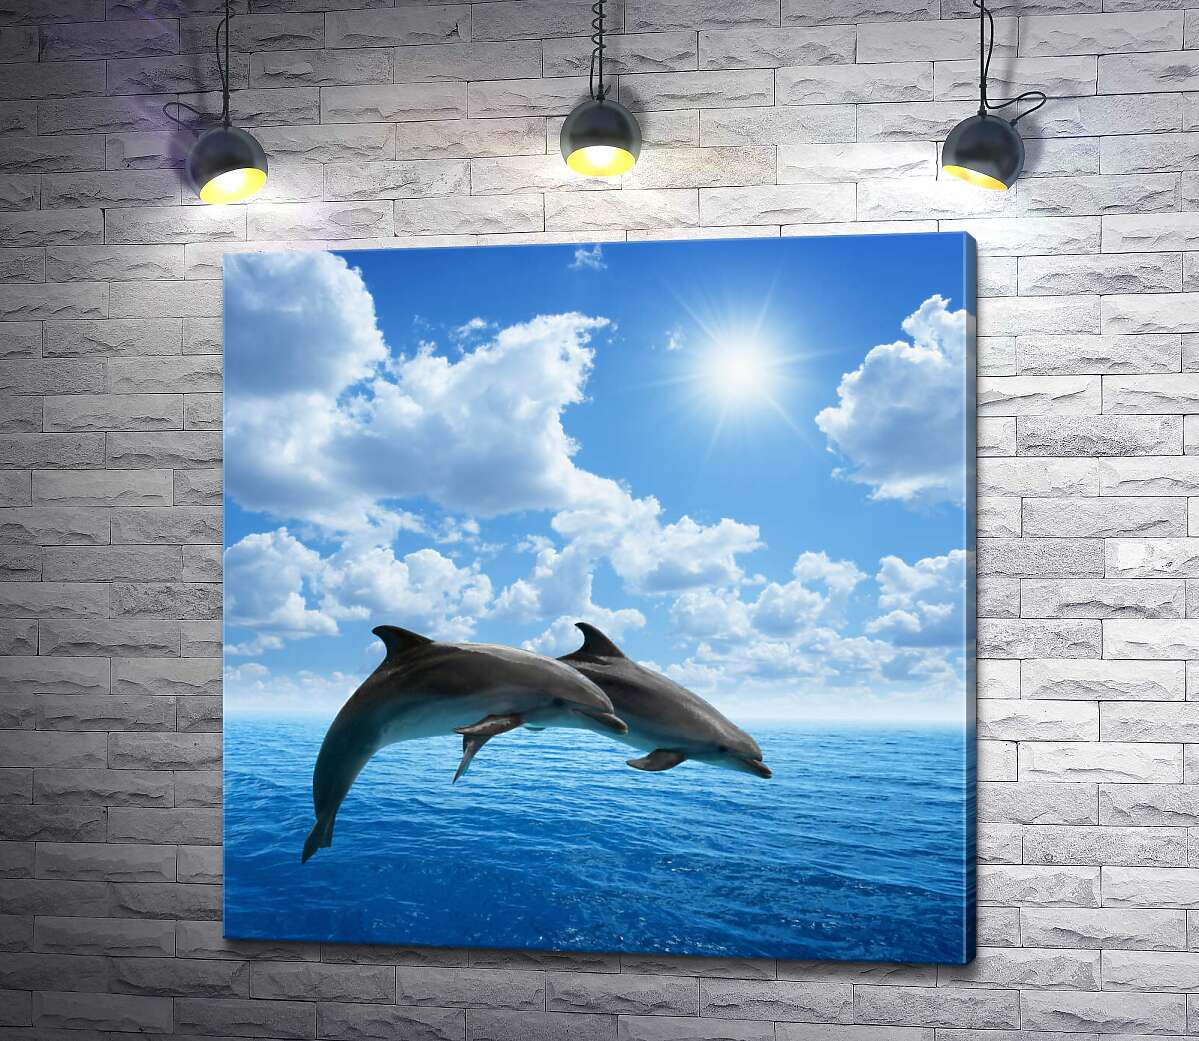 картина Пара дельфінів парить над поверхнею океану